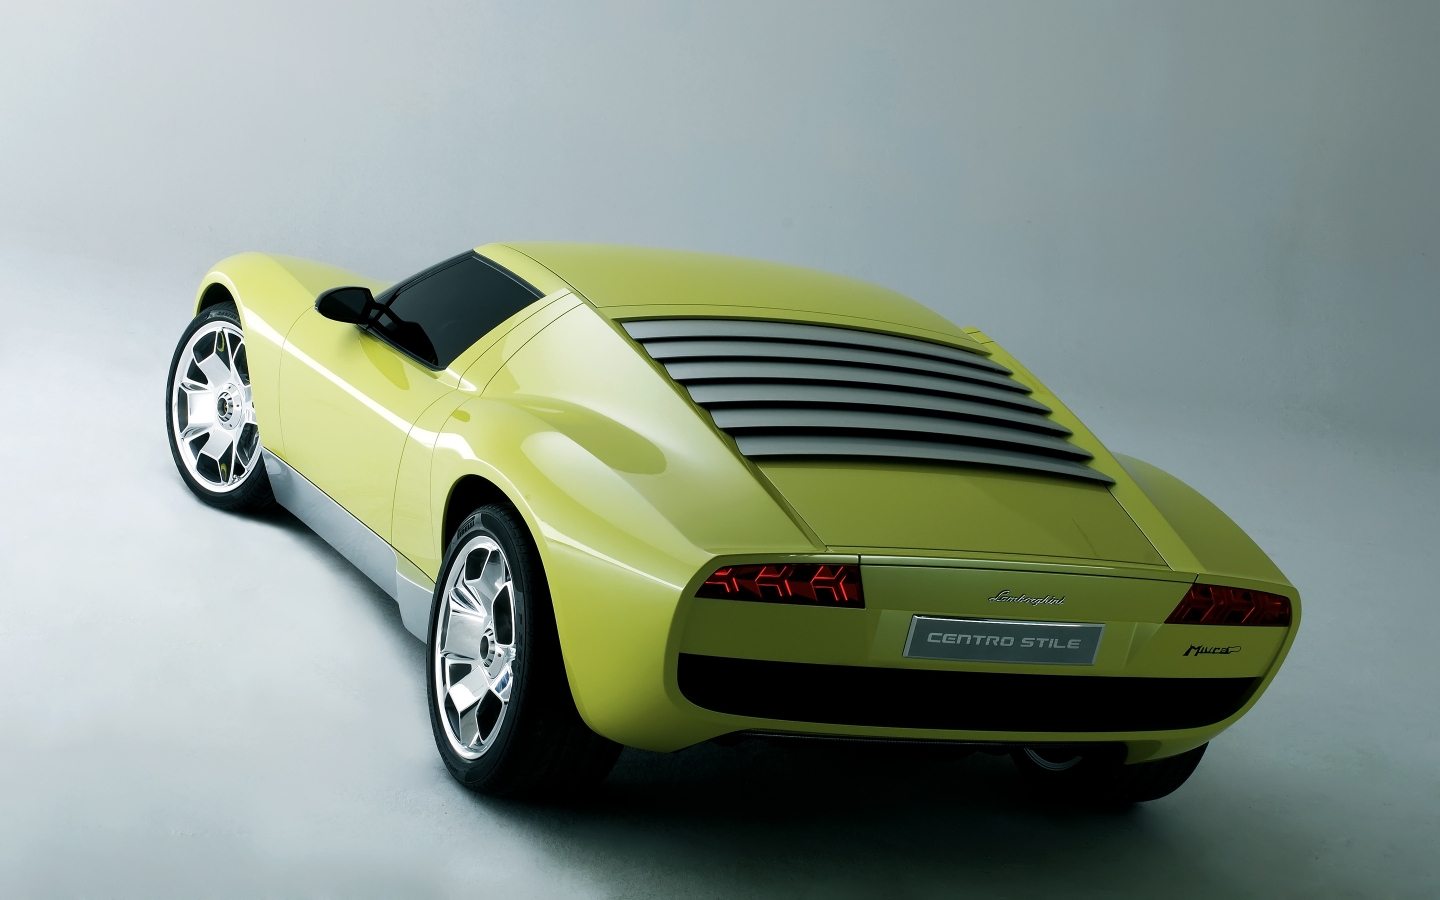 Lamborghini Miura Concept Rear for 1440 x 900 widescreen resolution